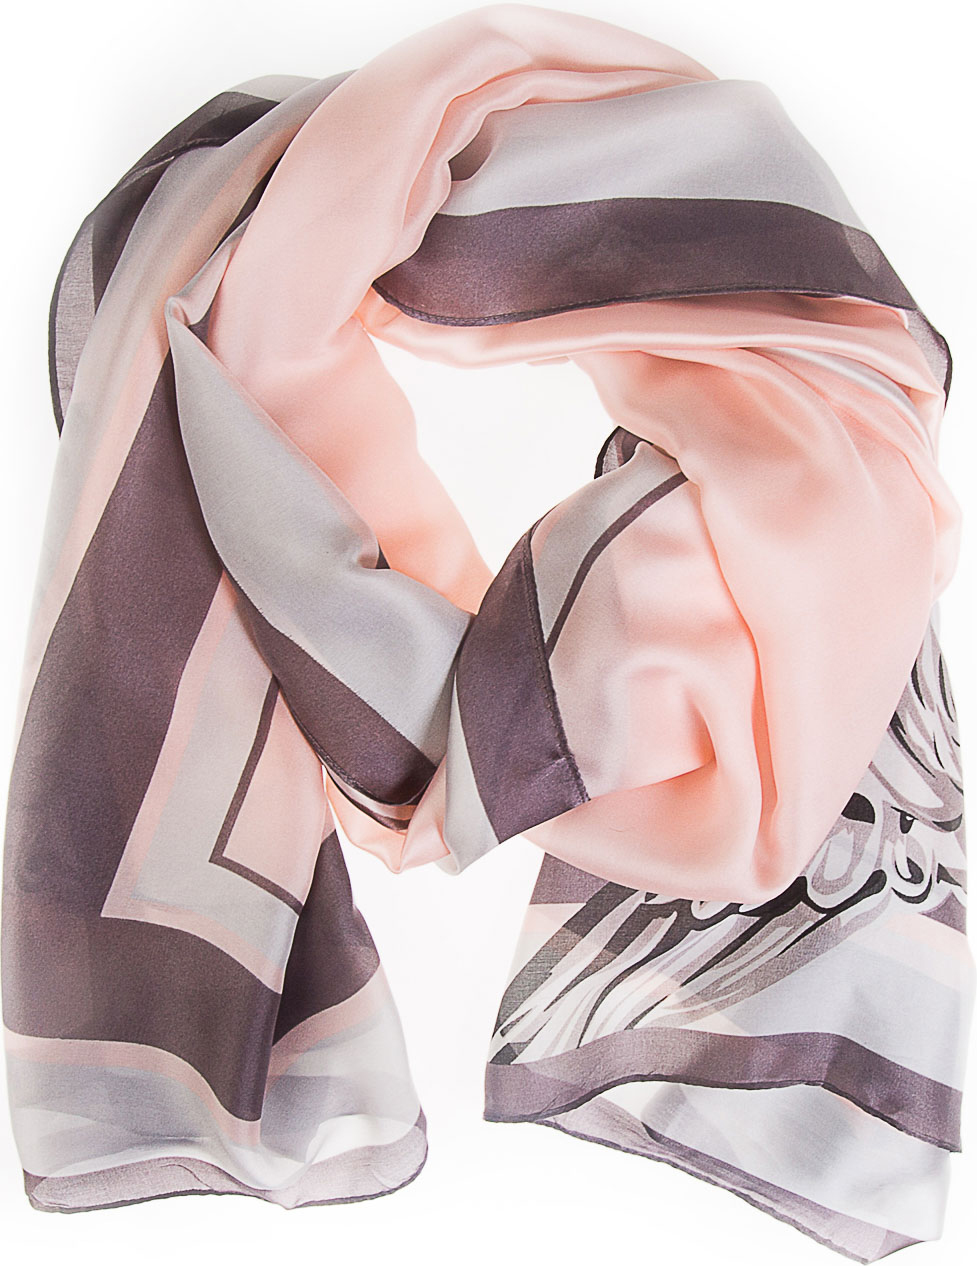 Палантин женский Vita Pelle, цвет: серый, розовый. K02P2611. Размер 180 х 90 см